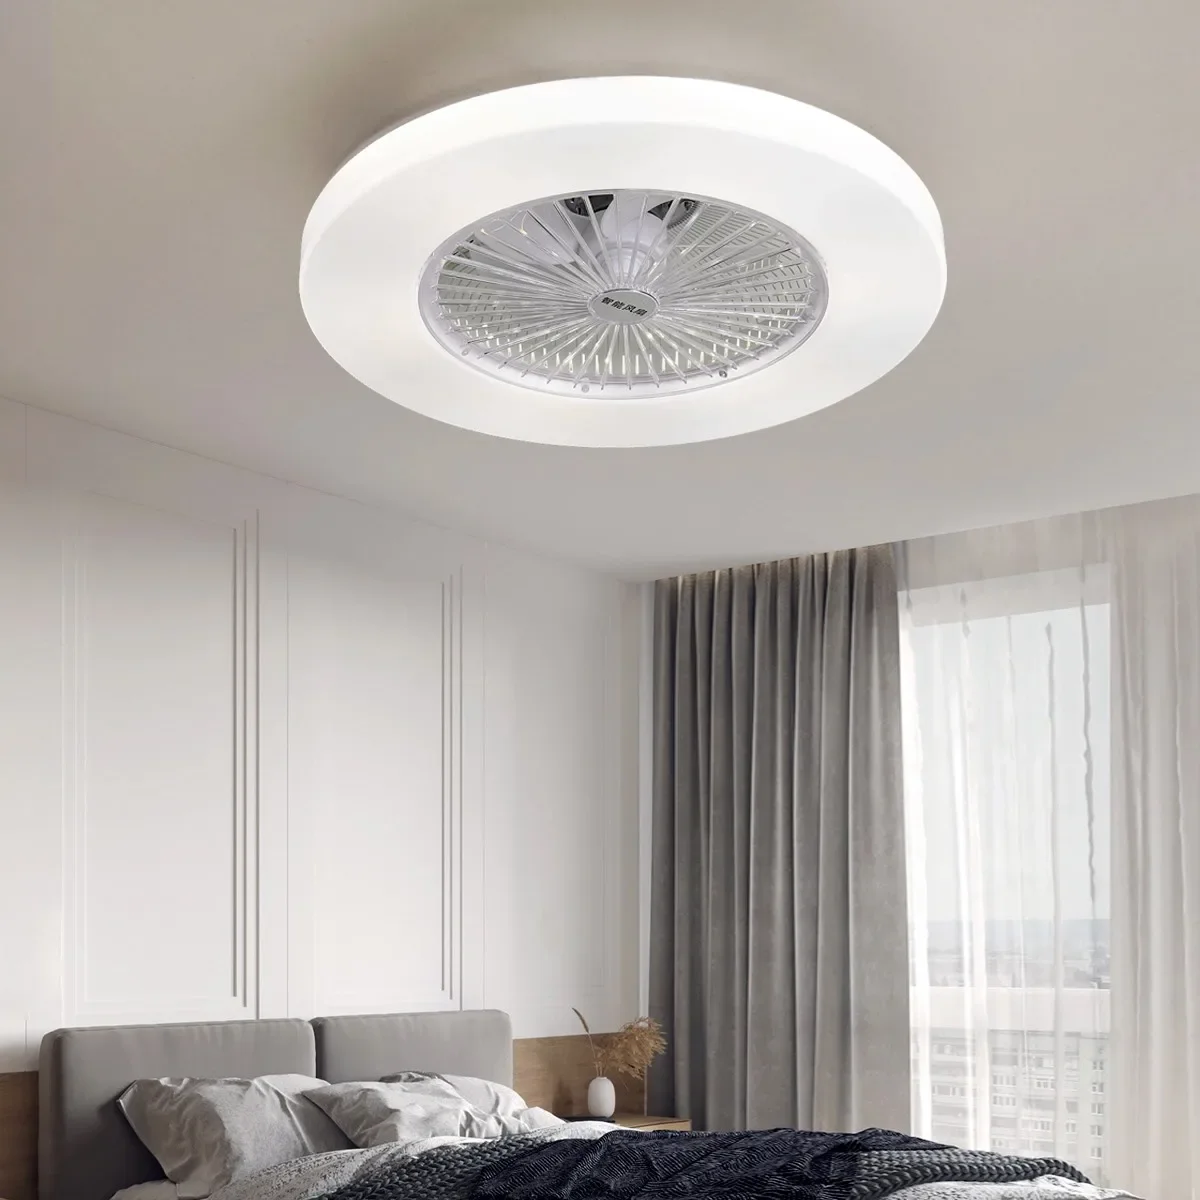 2021new Bedroom Light Ceiling Fan Chandelier Fan Integrated Dining Room Ultra-Thin Ceiling Fan Lamp Ceiling Fan Lights